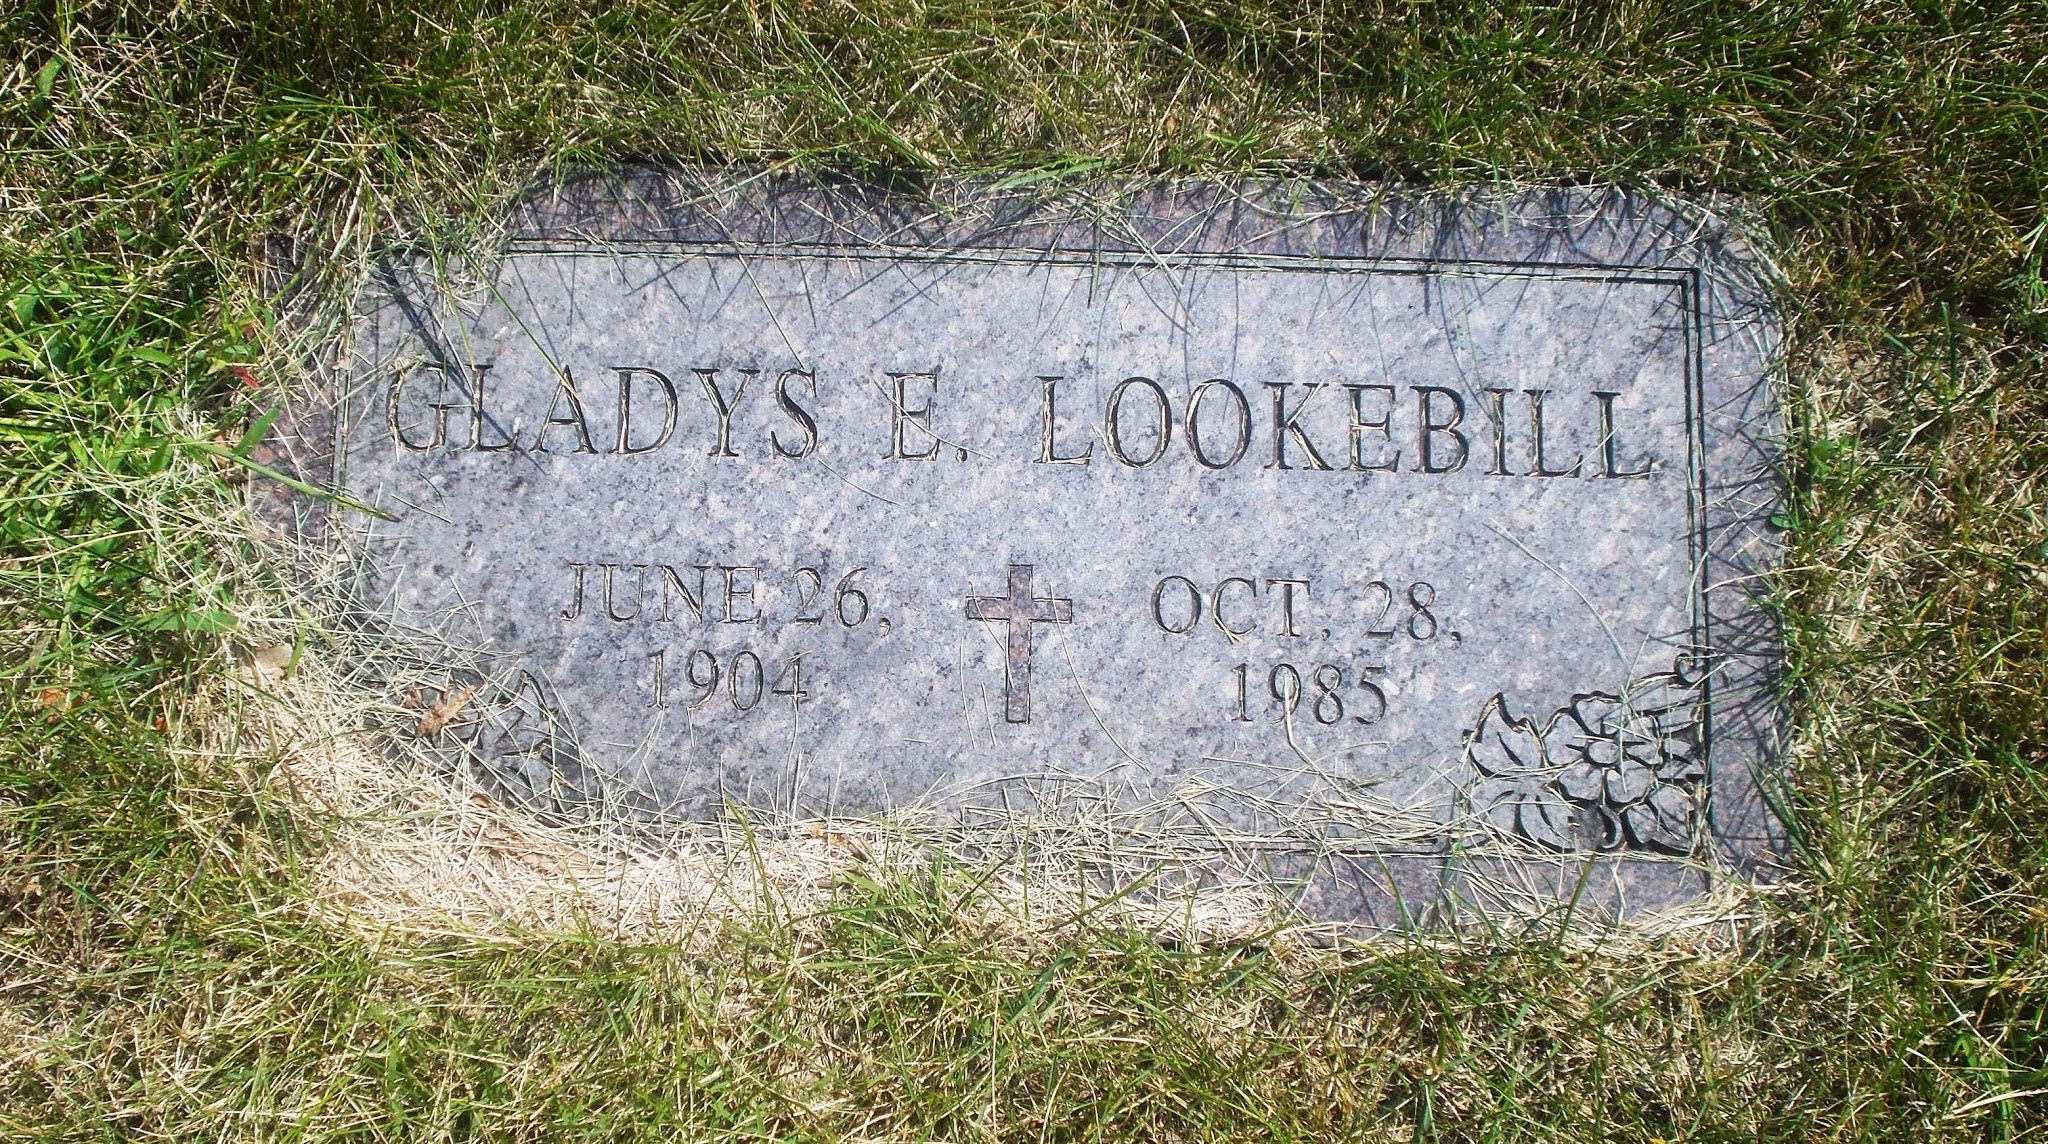 Gladys E Lookebill